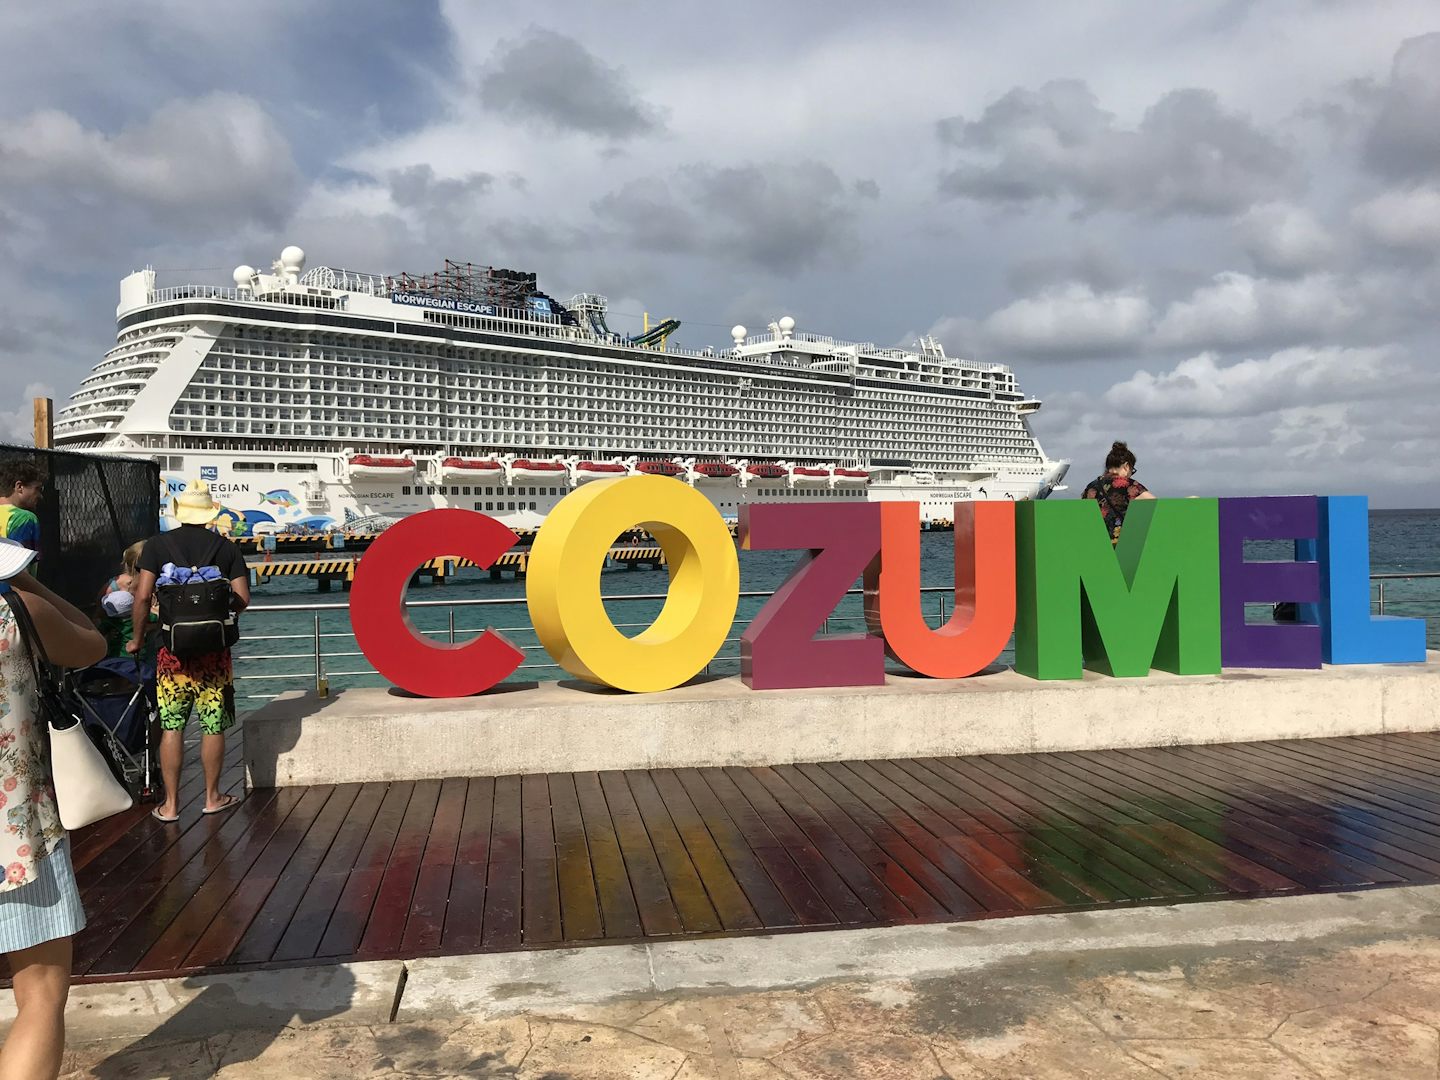 The unplanned stop in Cozumel